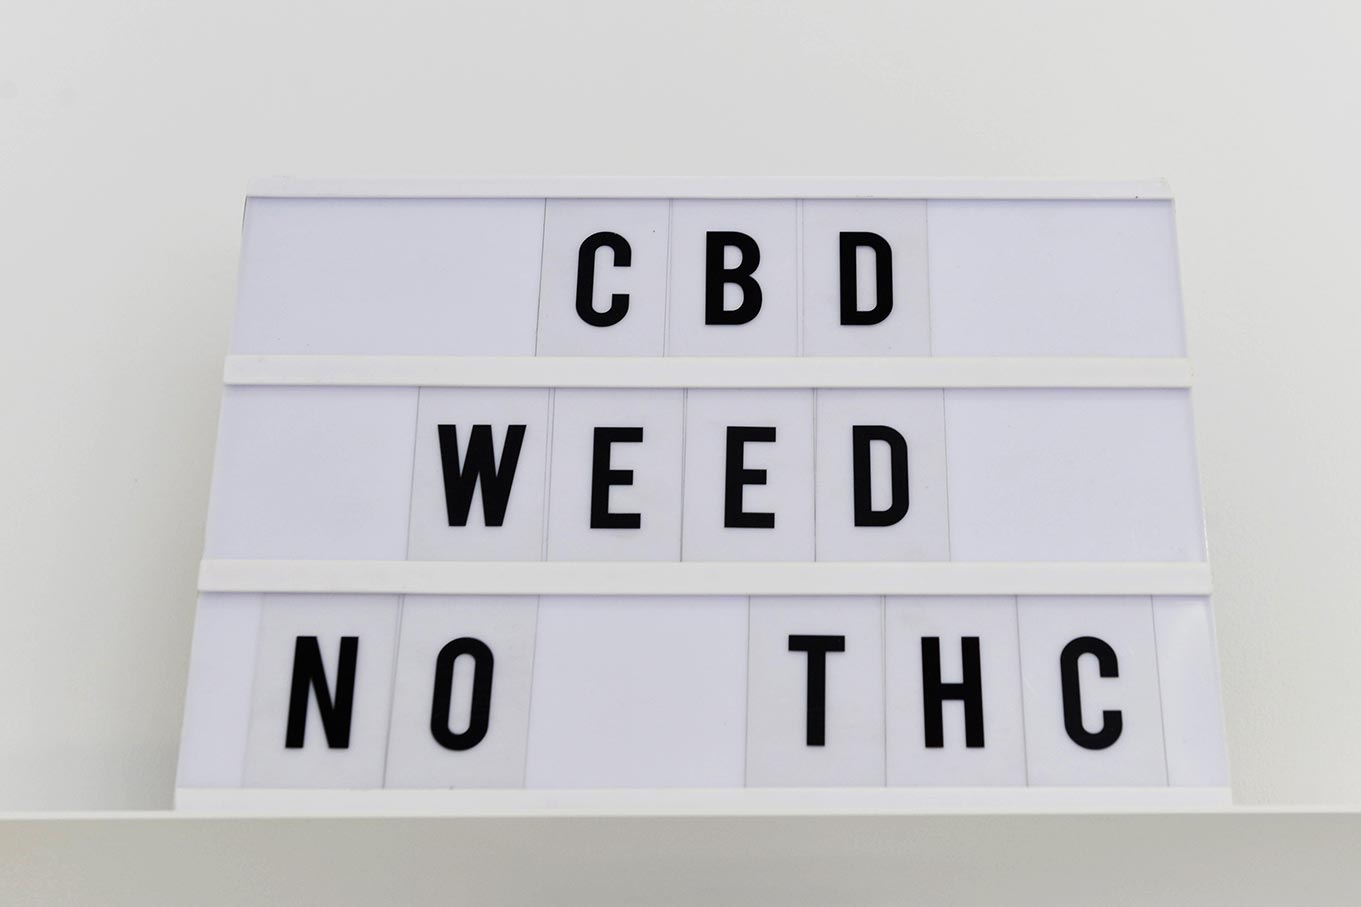 Tiendas de CBD: la doble paradoja del llamado cannabis legal 3